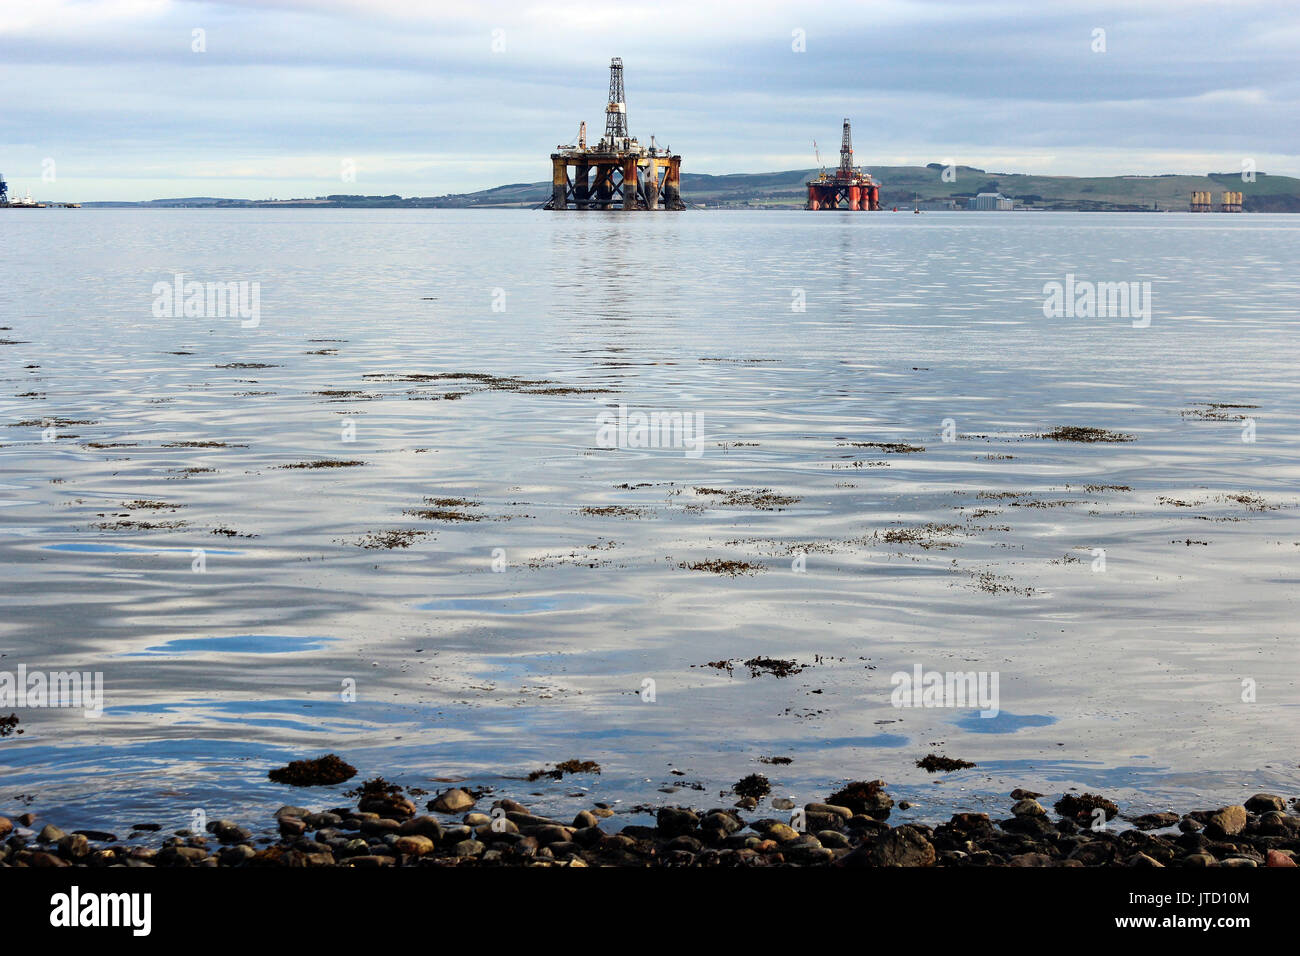 Schottland, Highlands, Scottish Scenery, Oil Platform, Oil Rigs, Bohranlage, Industrie auf See, Wasserreflektionen, Green Mountain Hintergrund Stockfoto